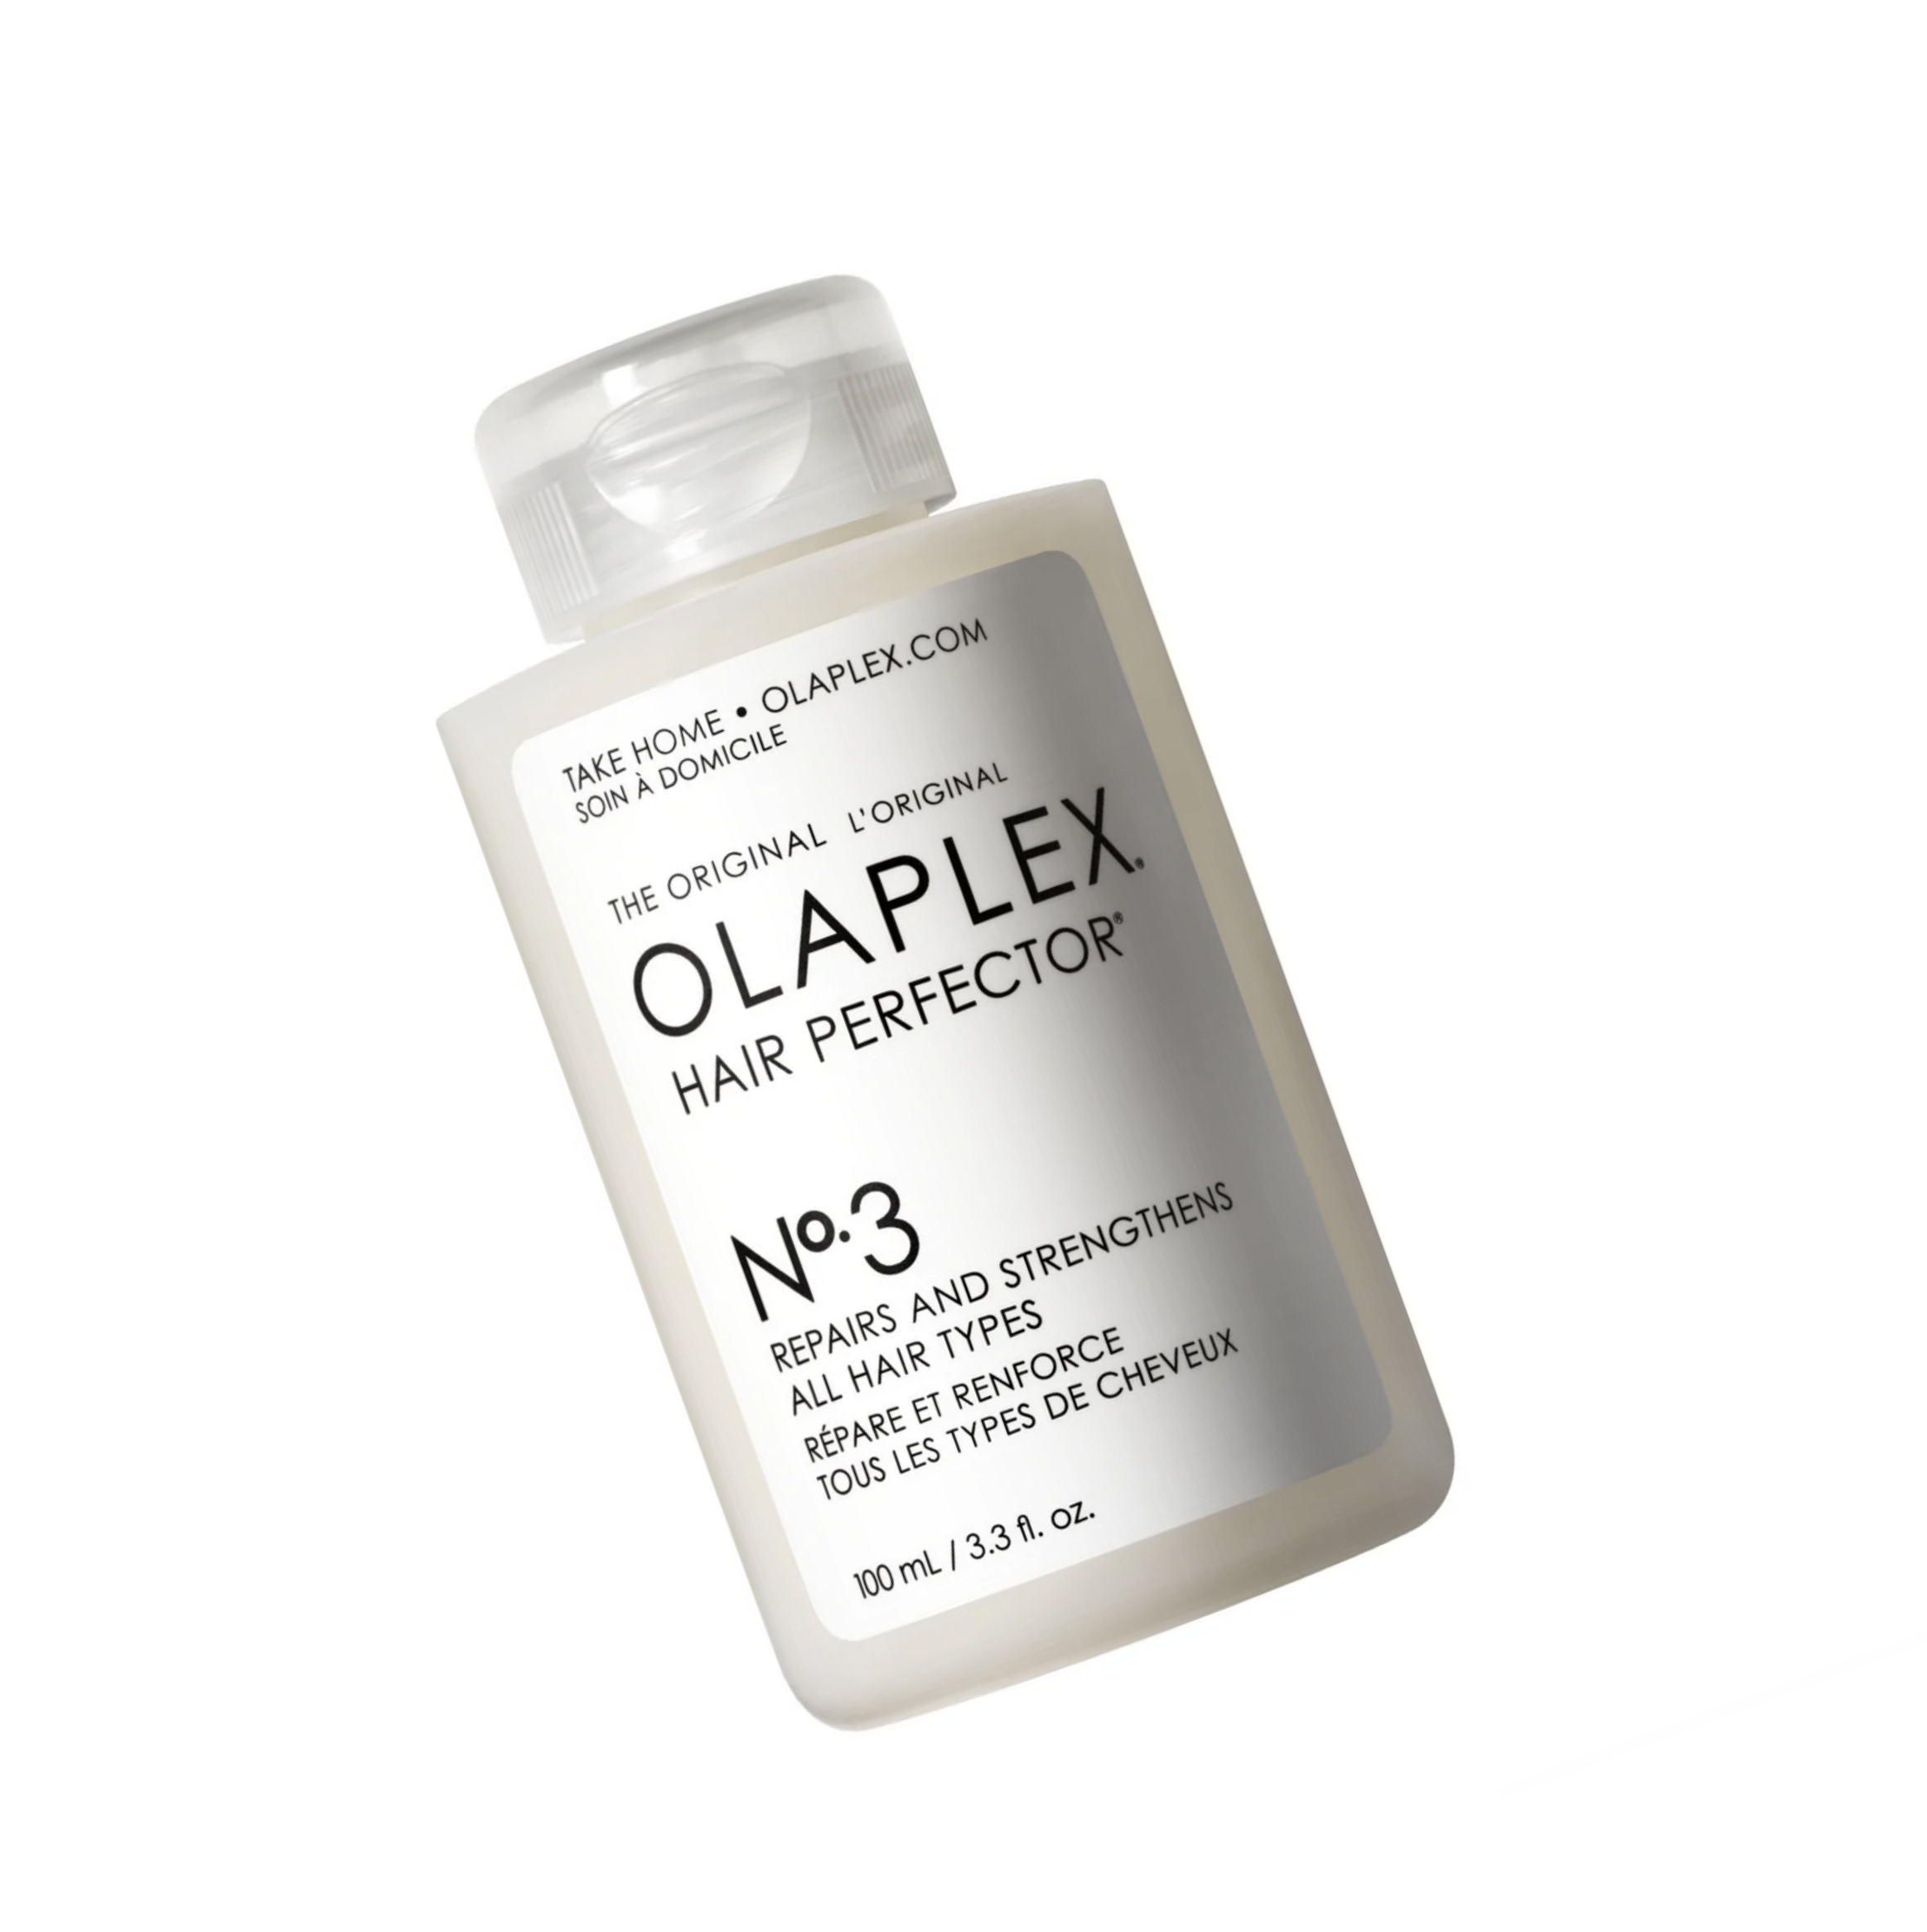 Soin répare renforce tous les types de cheveux N°3 Olaplex repairs and strengthens all hair types - Crème Salon